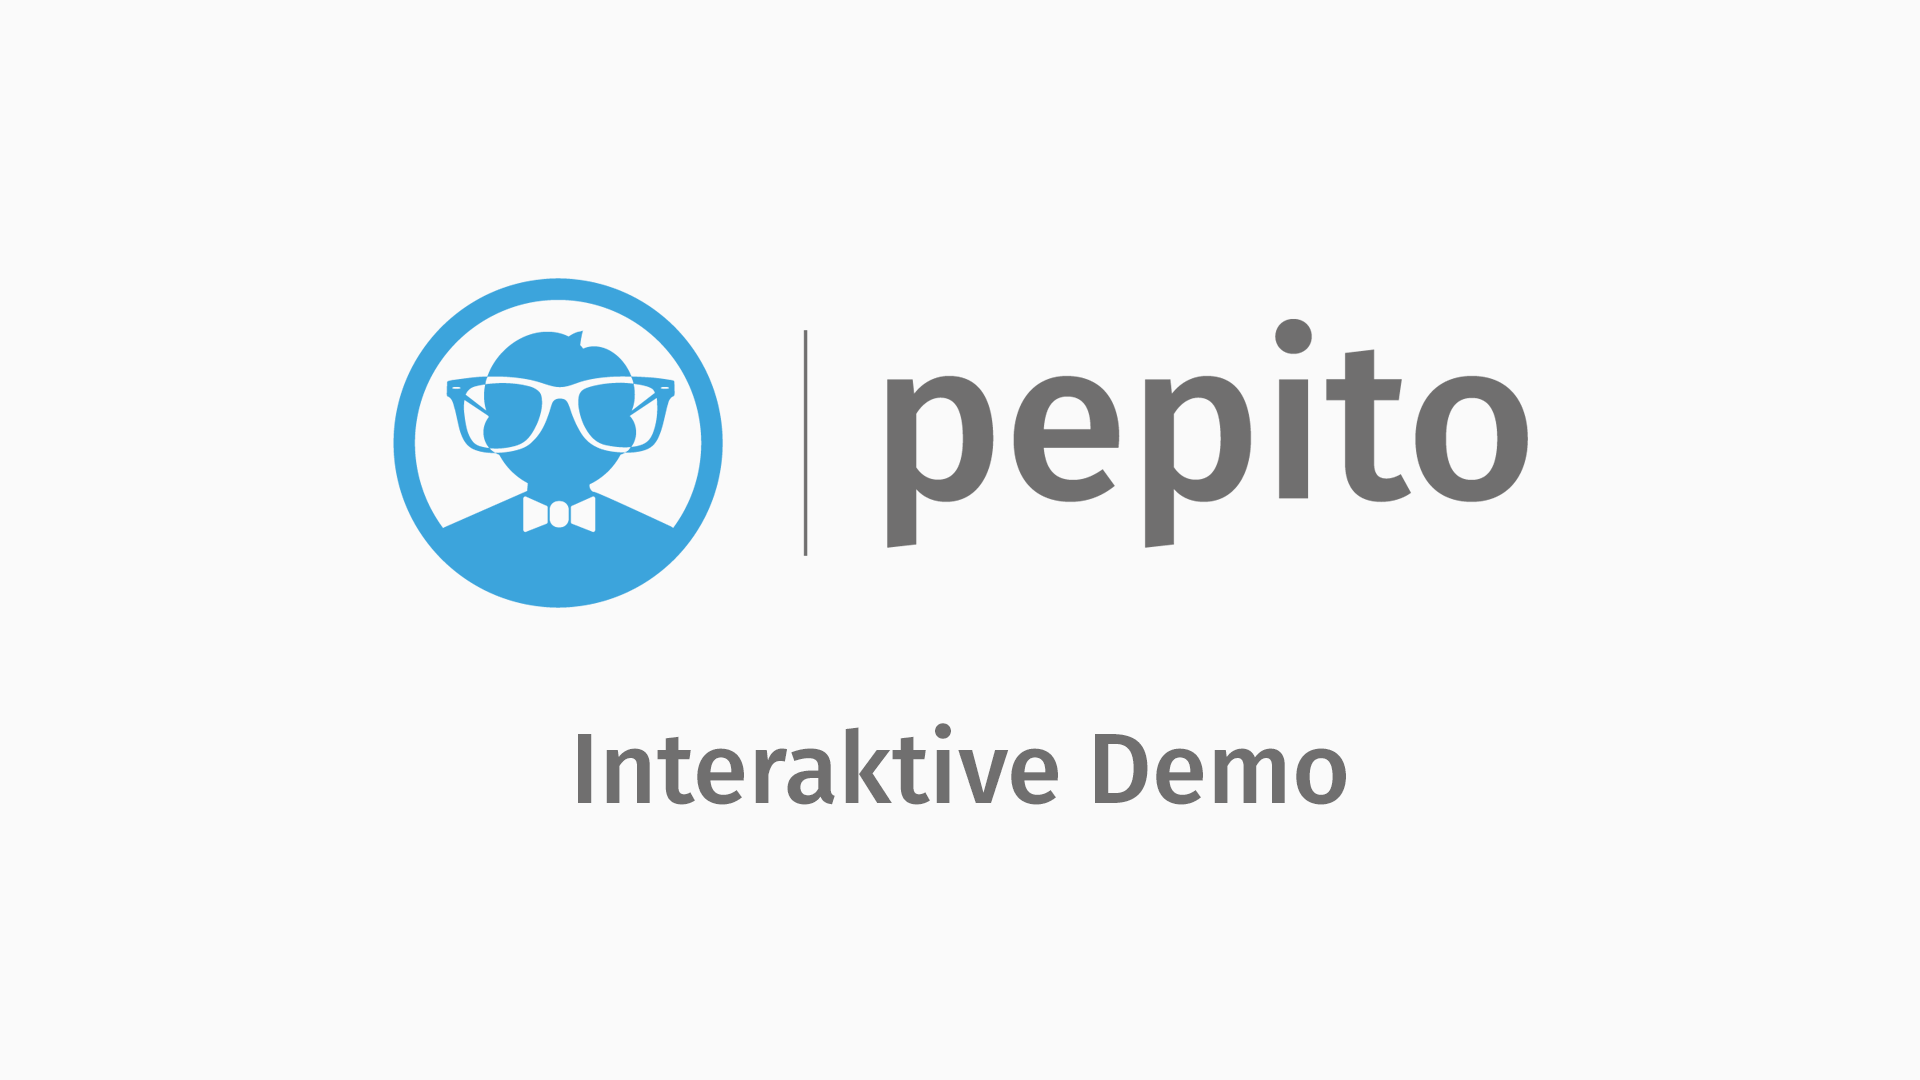 pepito - Interaktive Demo